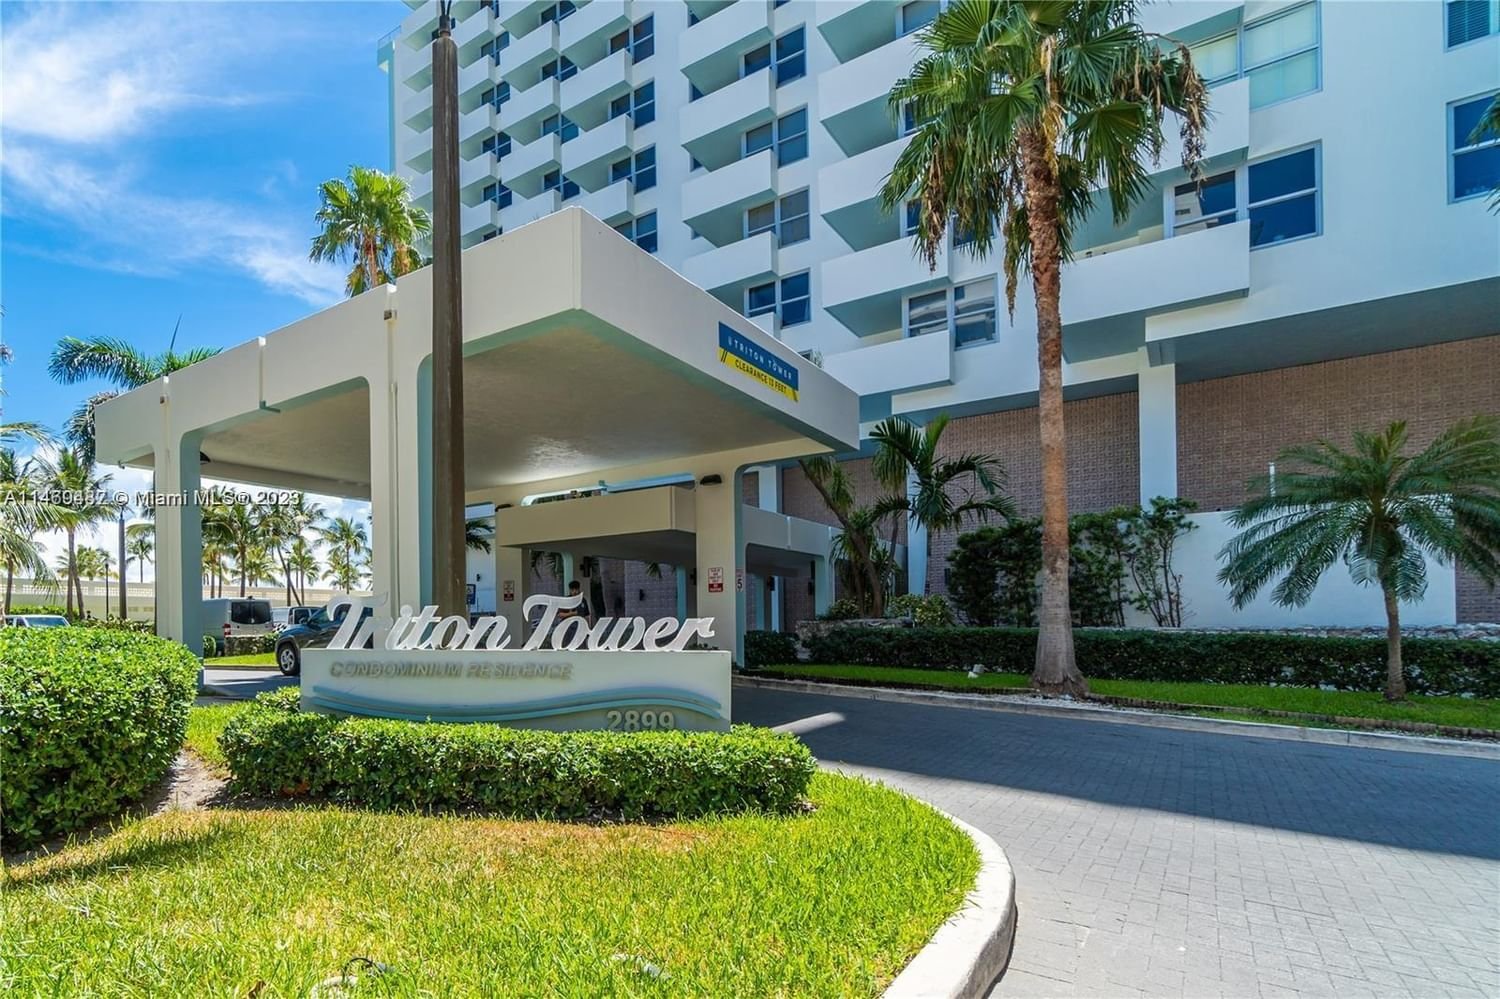 Real estate property located at 2899 Collins Ave #1146, Miami-Dade County, TRITON TOWER CONDO, Miami Beach, FL